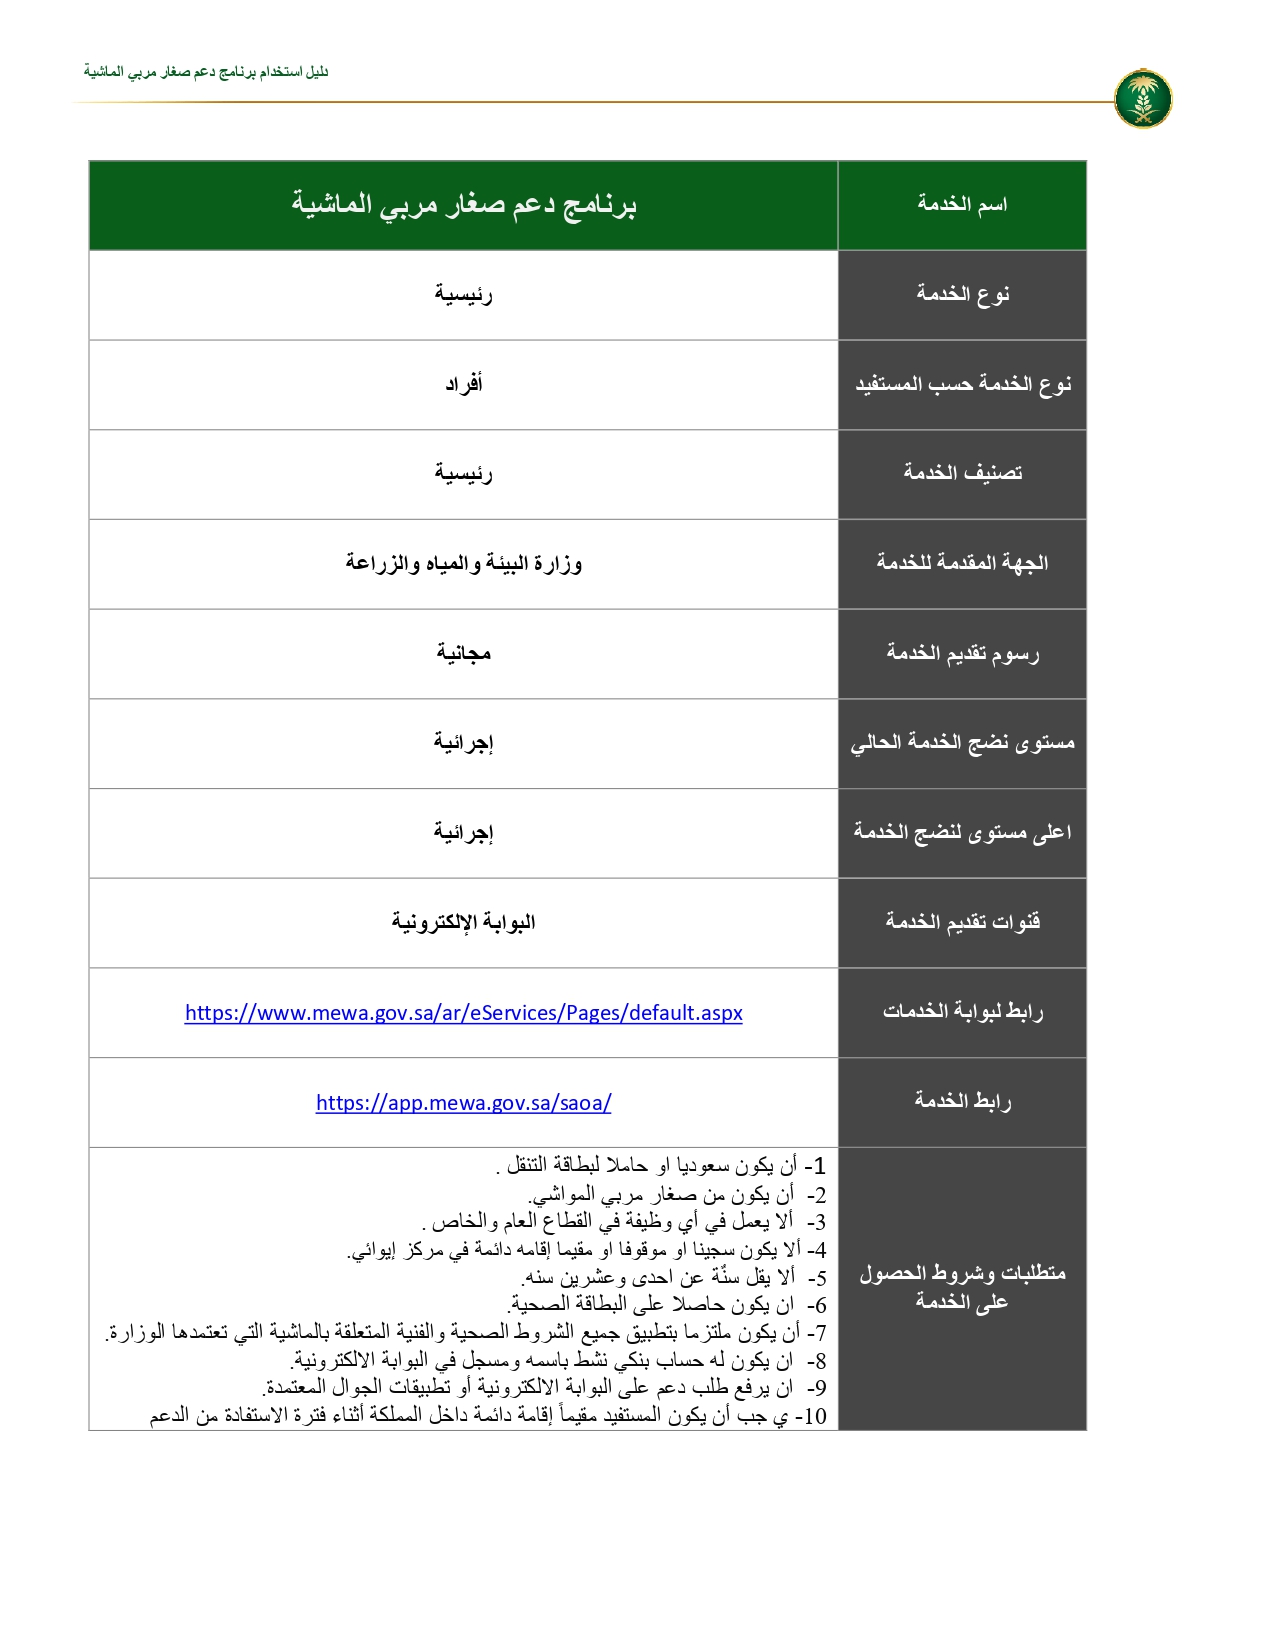 دعم صغار الماشية page 0002 - مدونة التقنية العربية